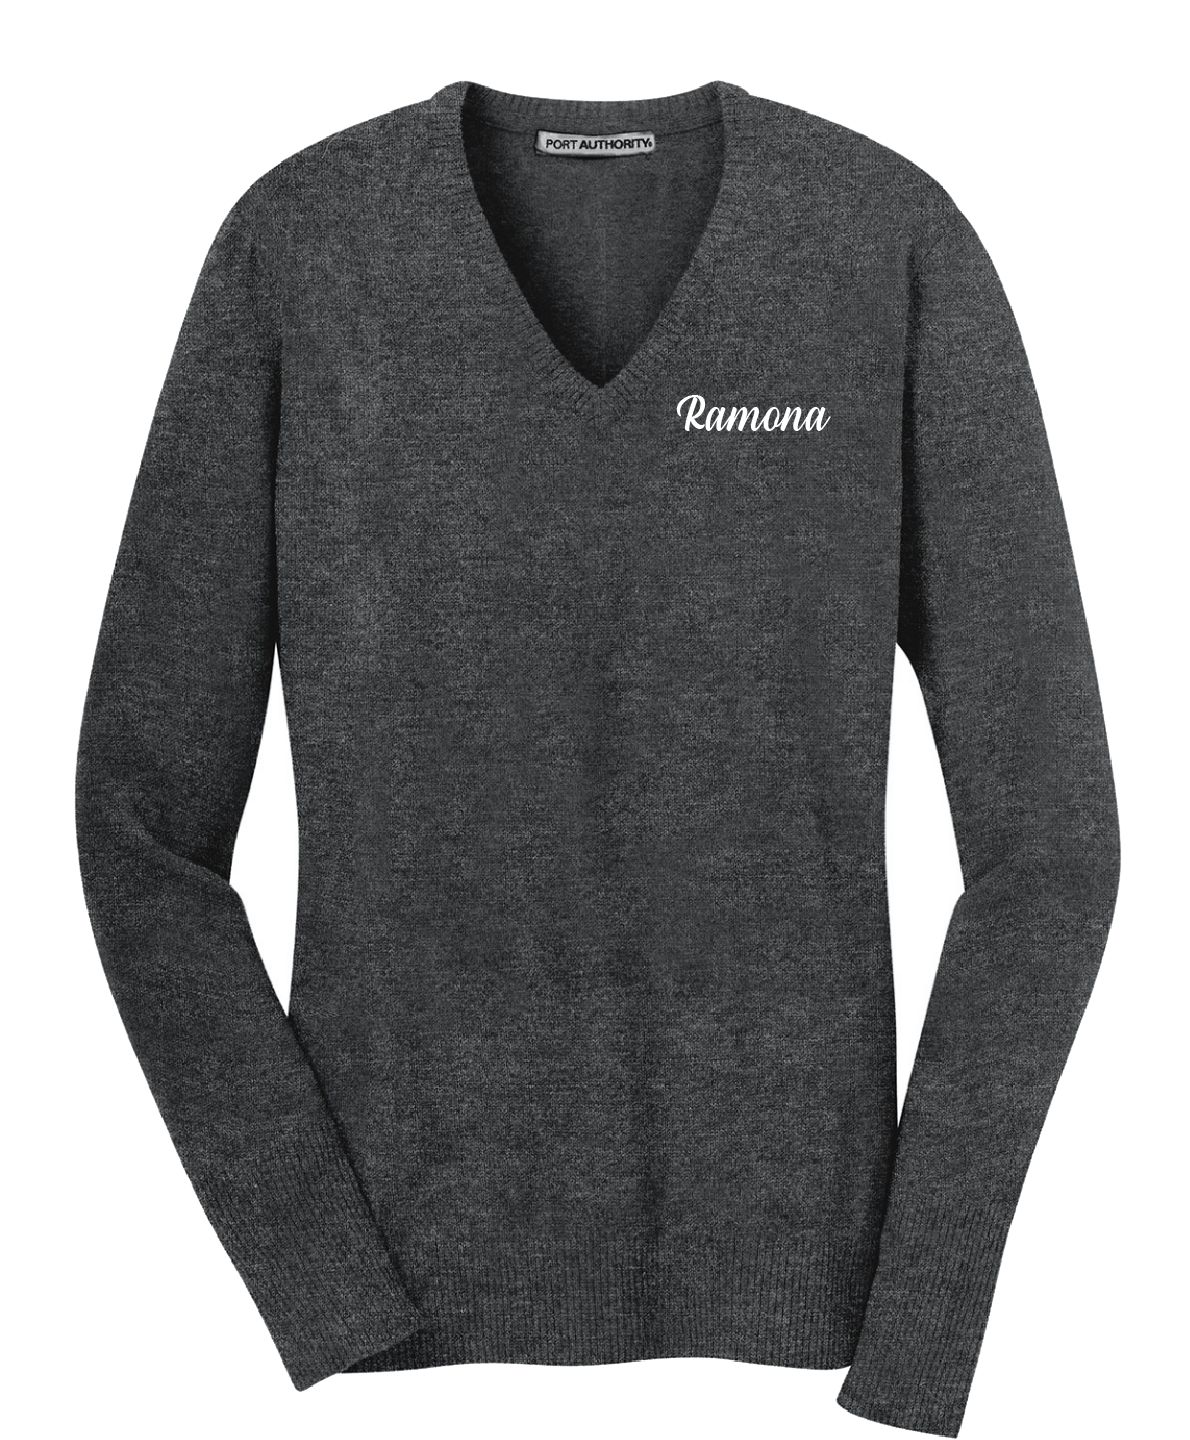 Ramona - Port Authority® Ladies V-Neck Sweater